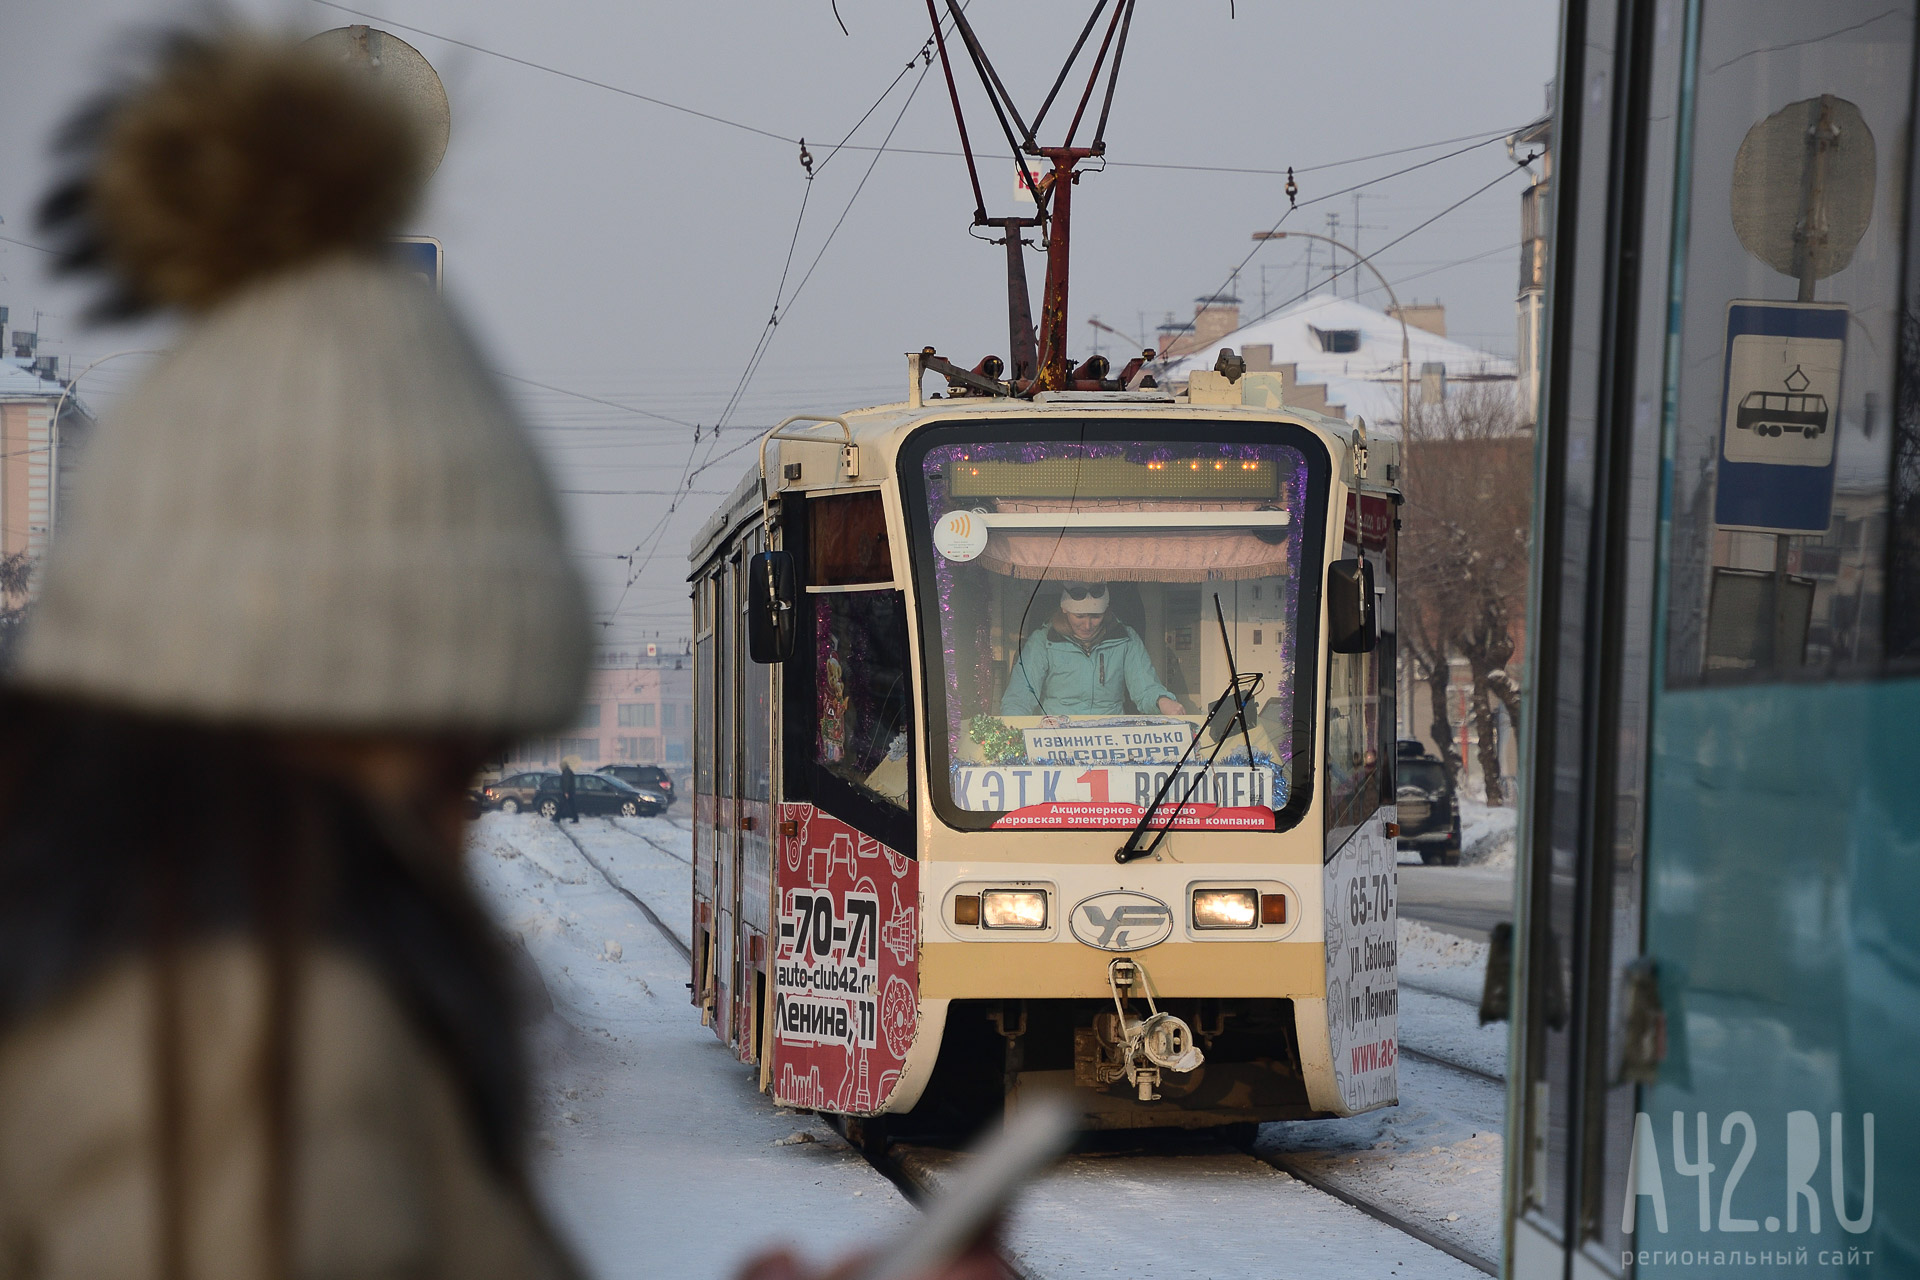 Кемеровчанку возмутила укладка трамвайных путей на холоде: комментарий мэра